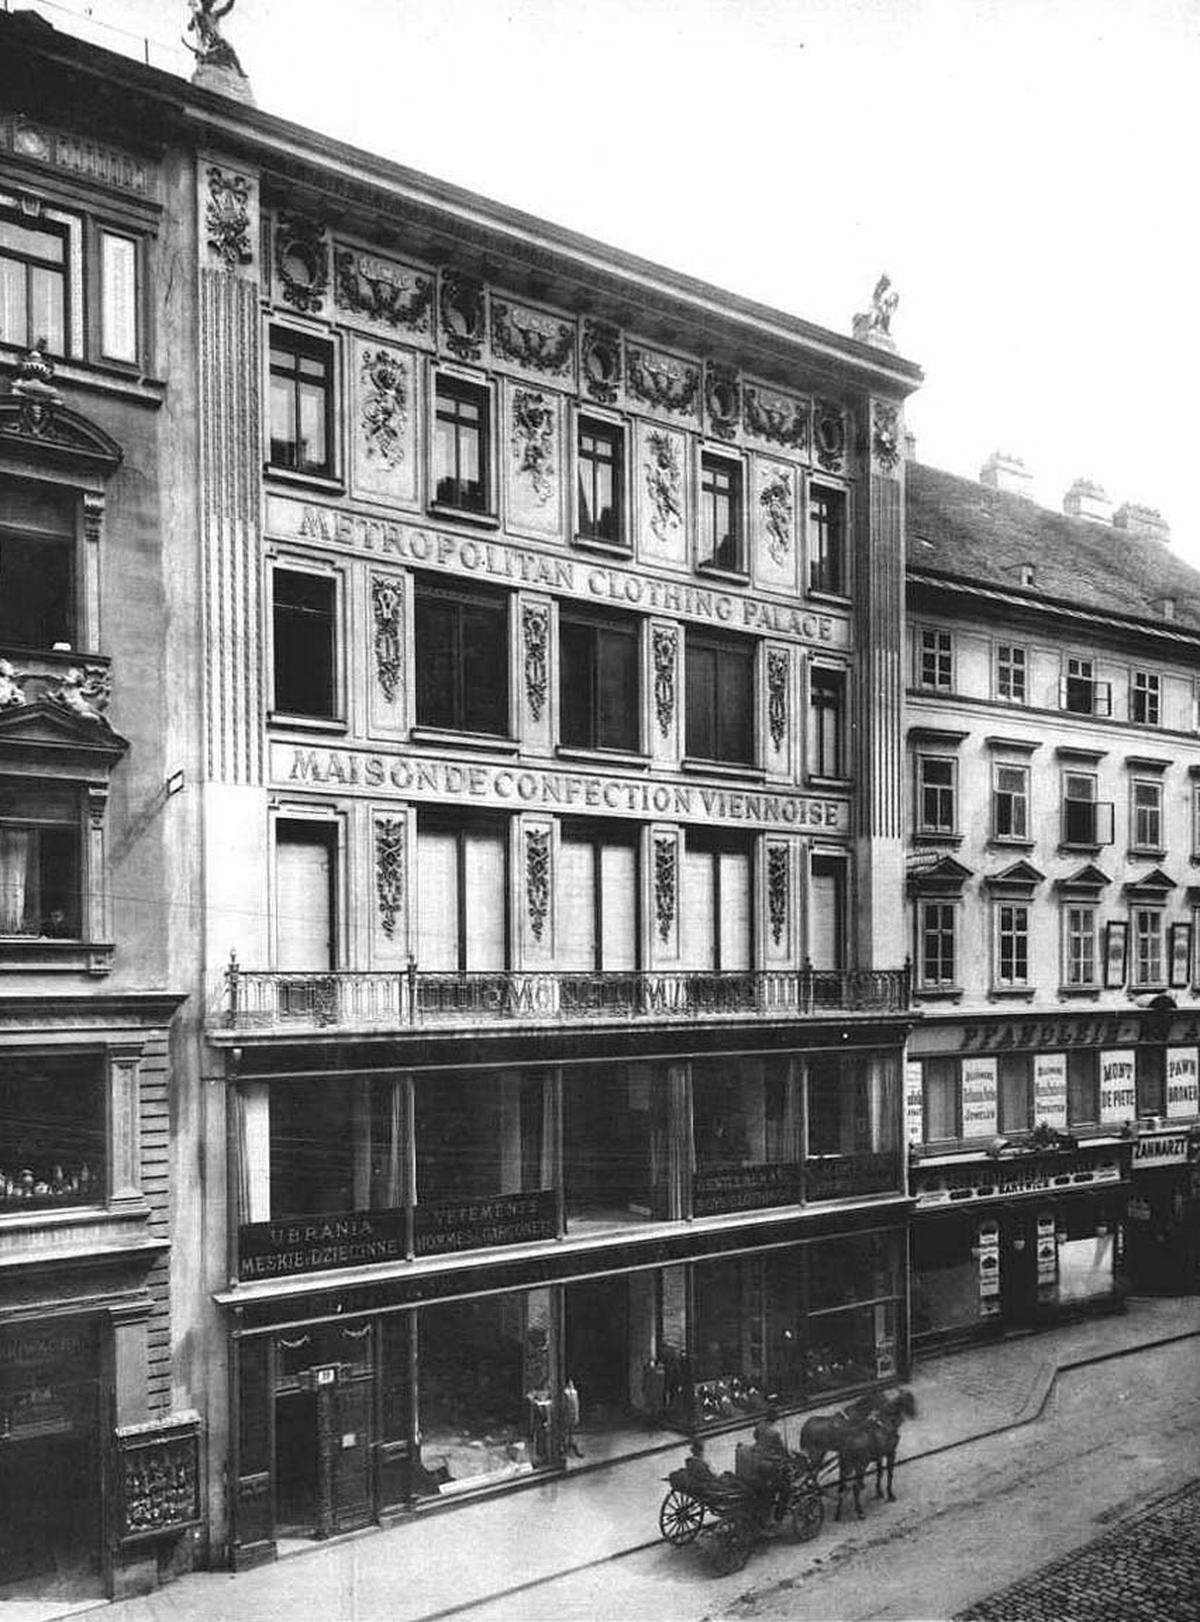 Seit 1897 befindet sich das Warenhaus Neumann auf der Kärntner Straße Nummer 19. Es wurde zwischen 1895 und 1896 nach einem Entwurf von Otto Wagner erbaut. 1950 errichtete der Architekt Carl Appel einen kompletten Neubau mit neun Etagen.